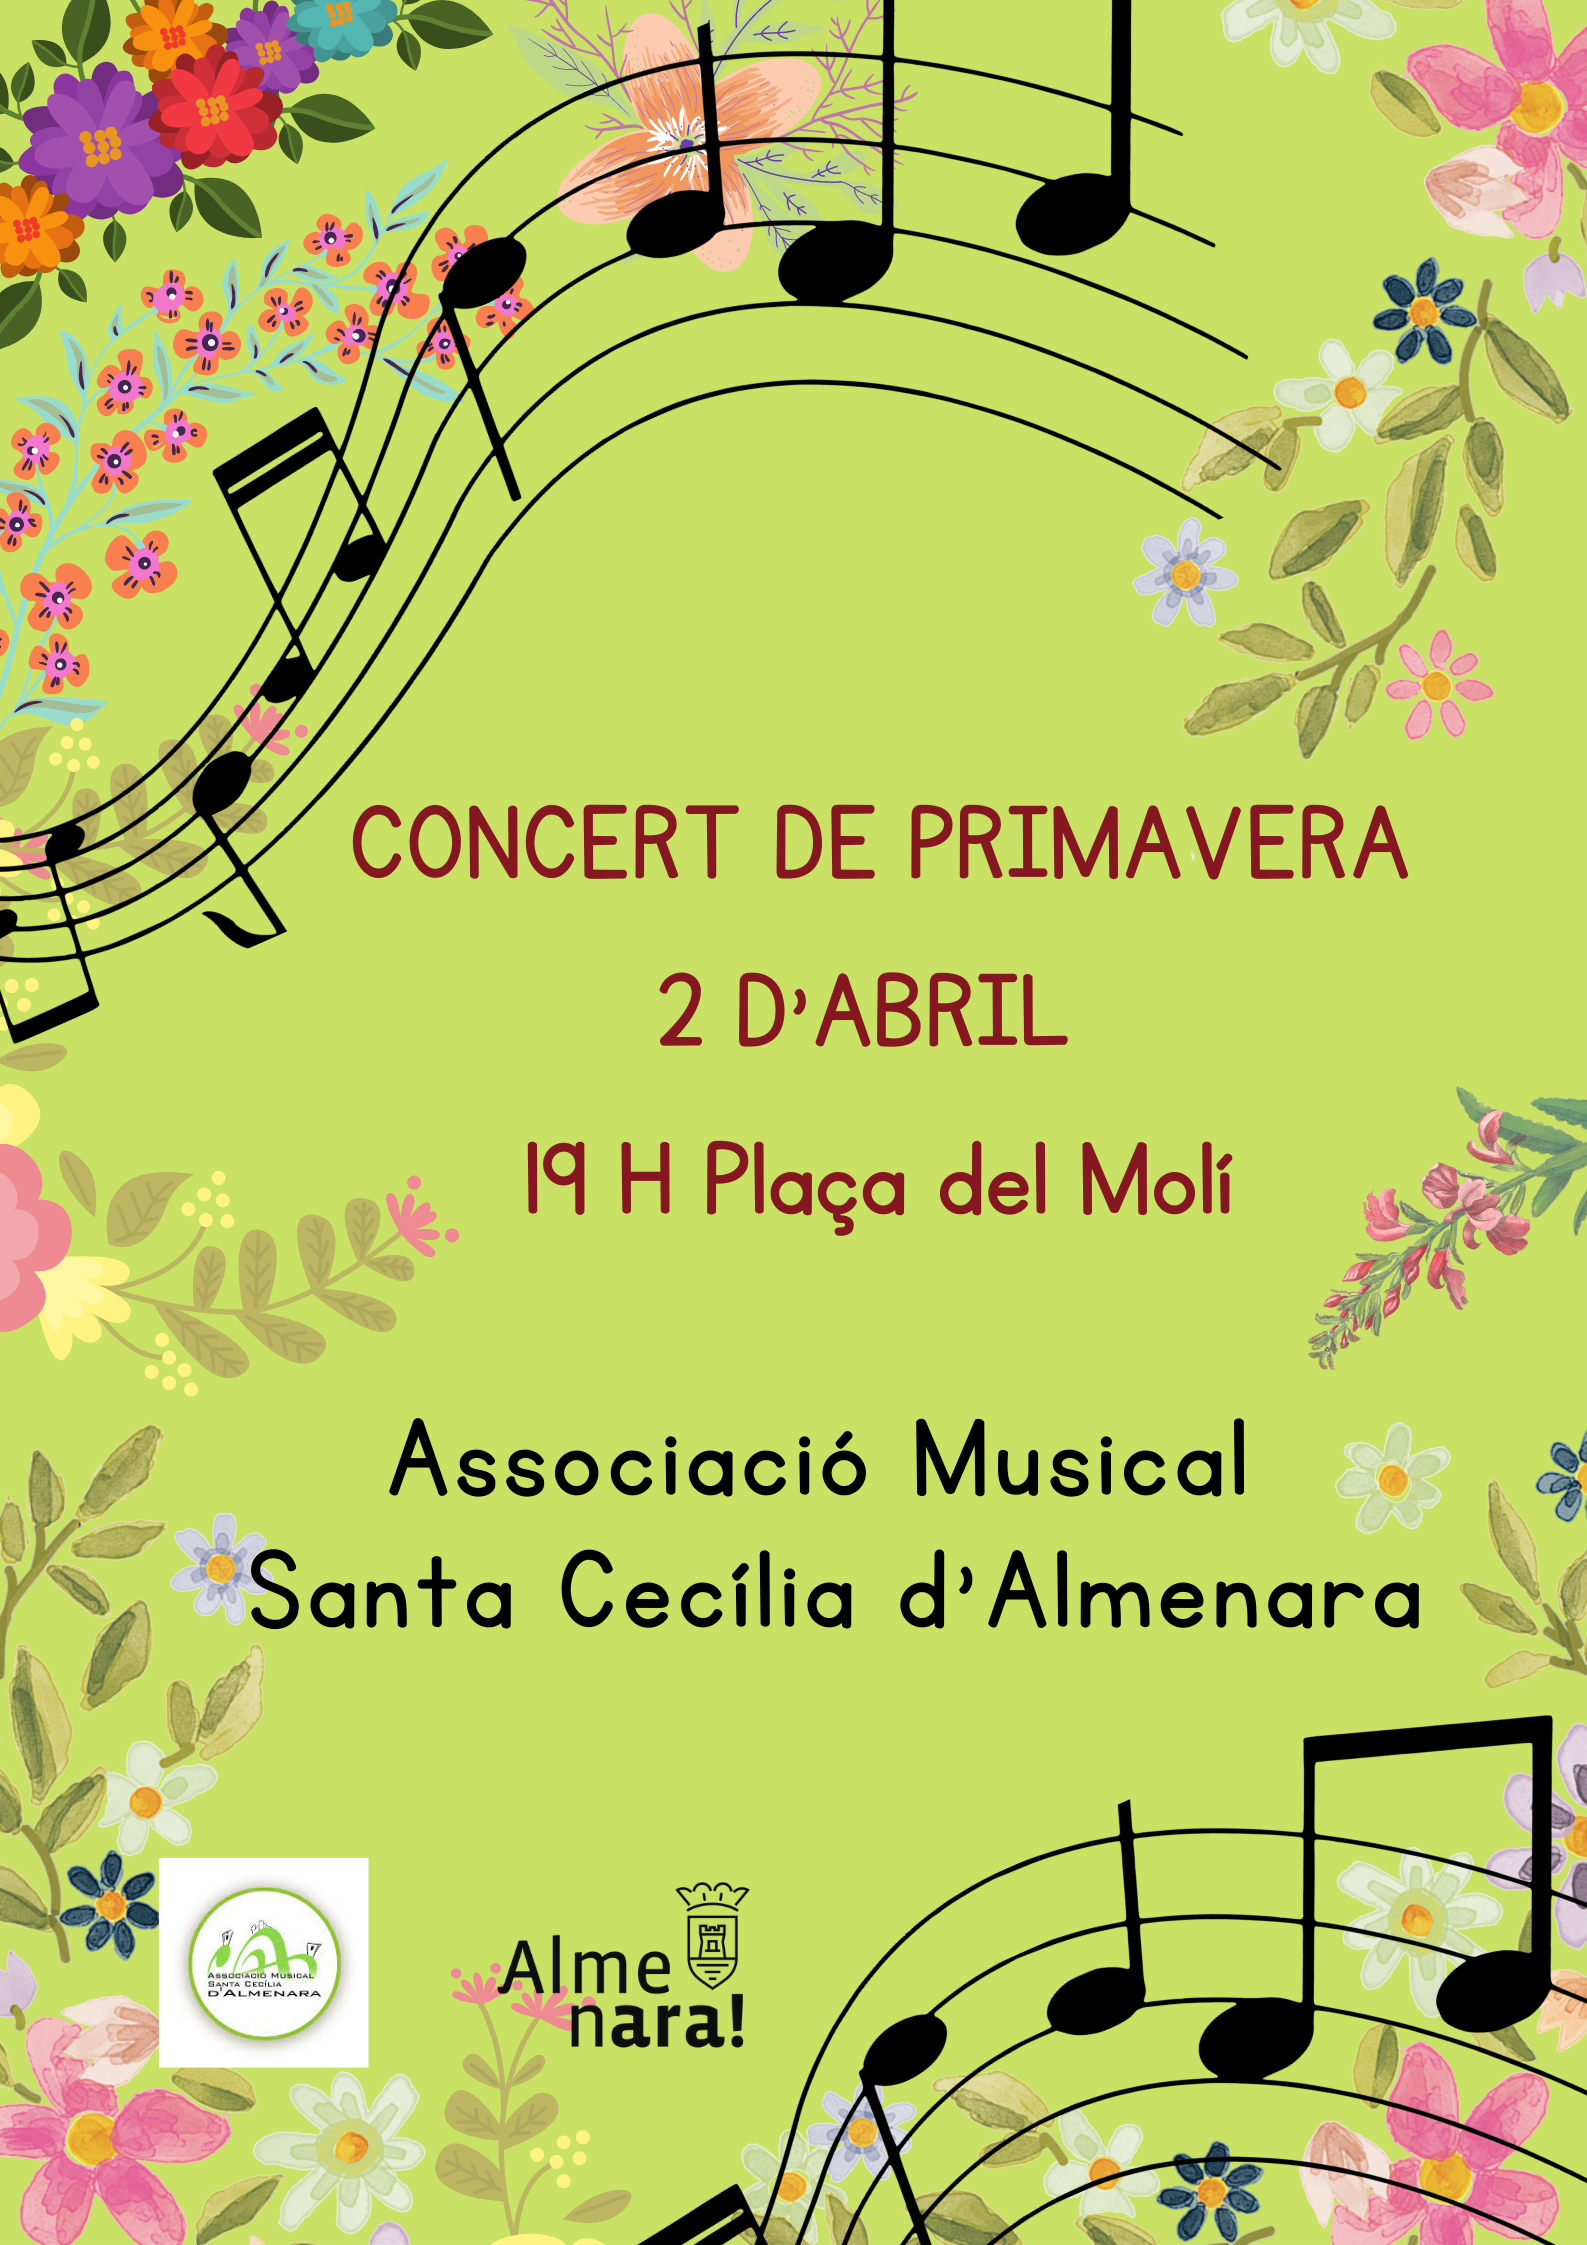 L’Associació Musical Santa Cecilia d’Almenara retoma las actividades con el concierto extraordinario de primavera